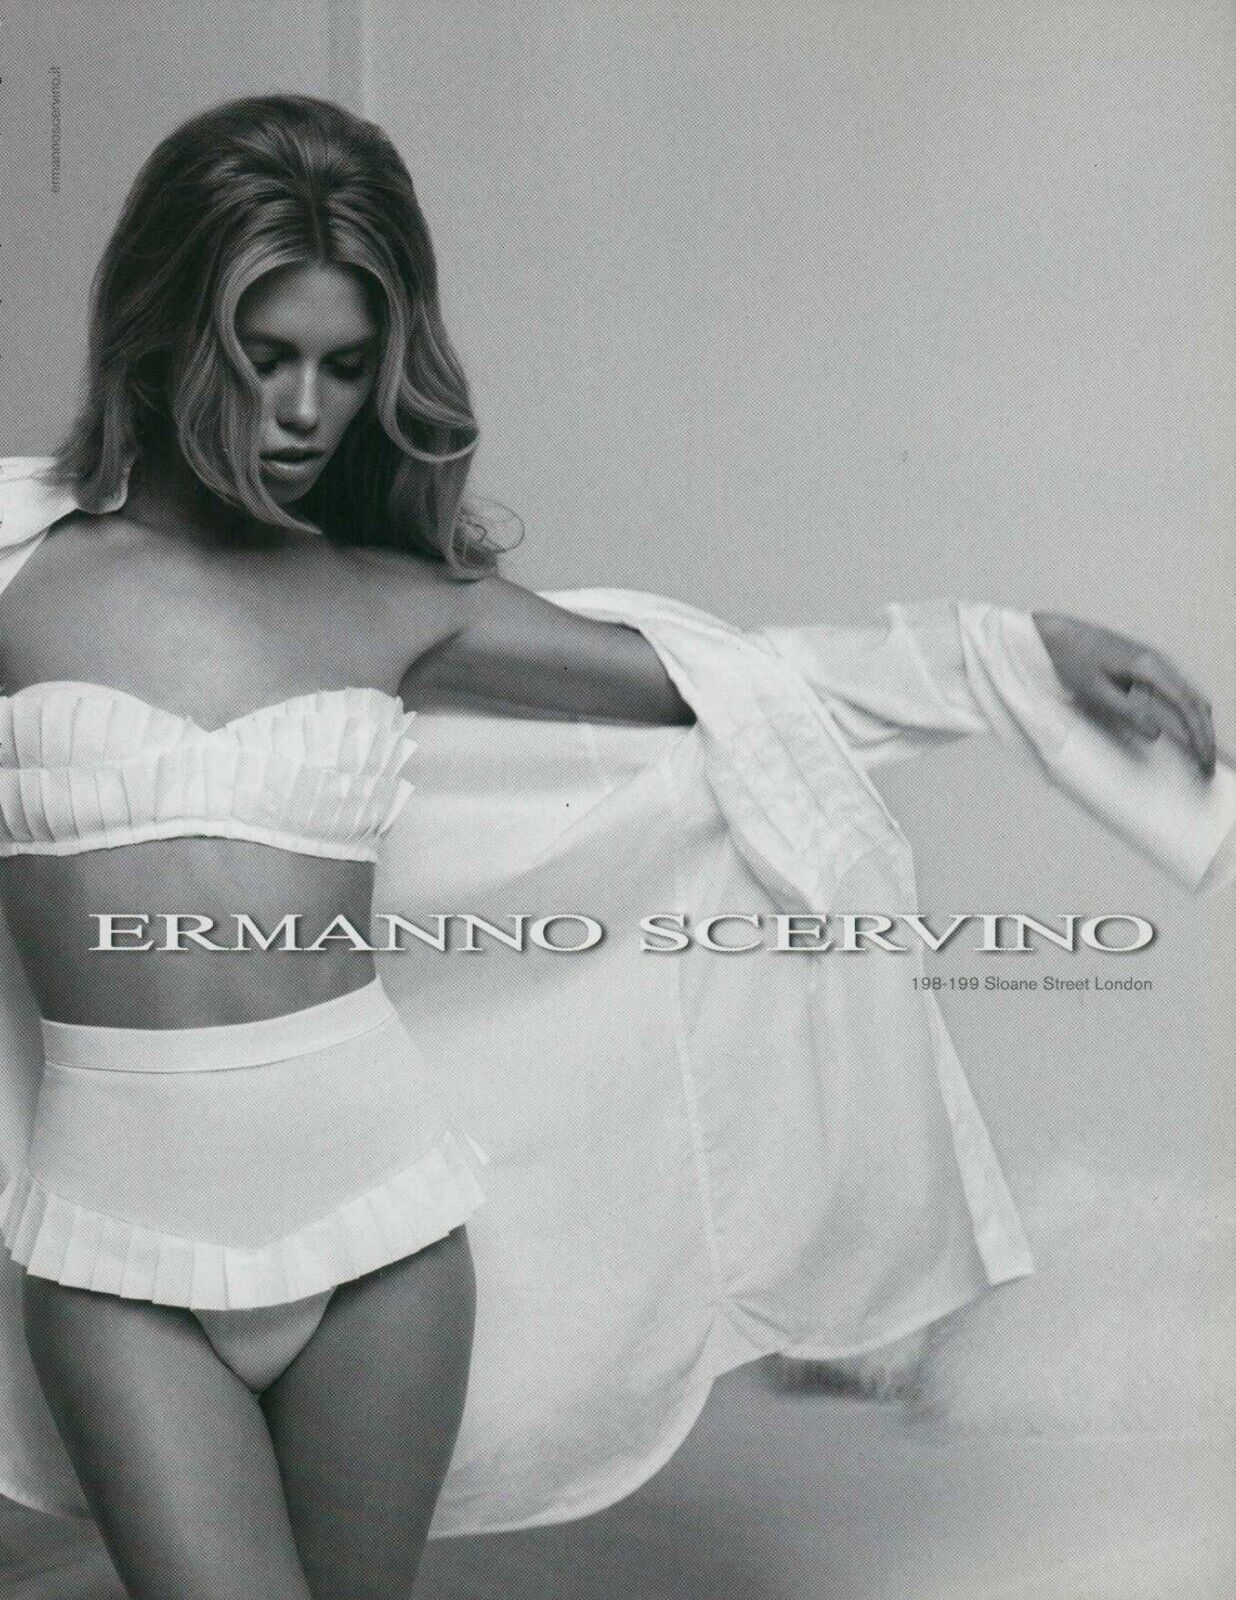 ERMANNO SCERVINO Lingerie Magazine Print Ad Sexy Bra Hosiery Underwear VTG 2011